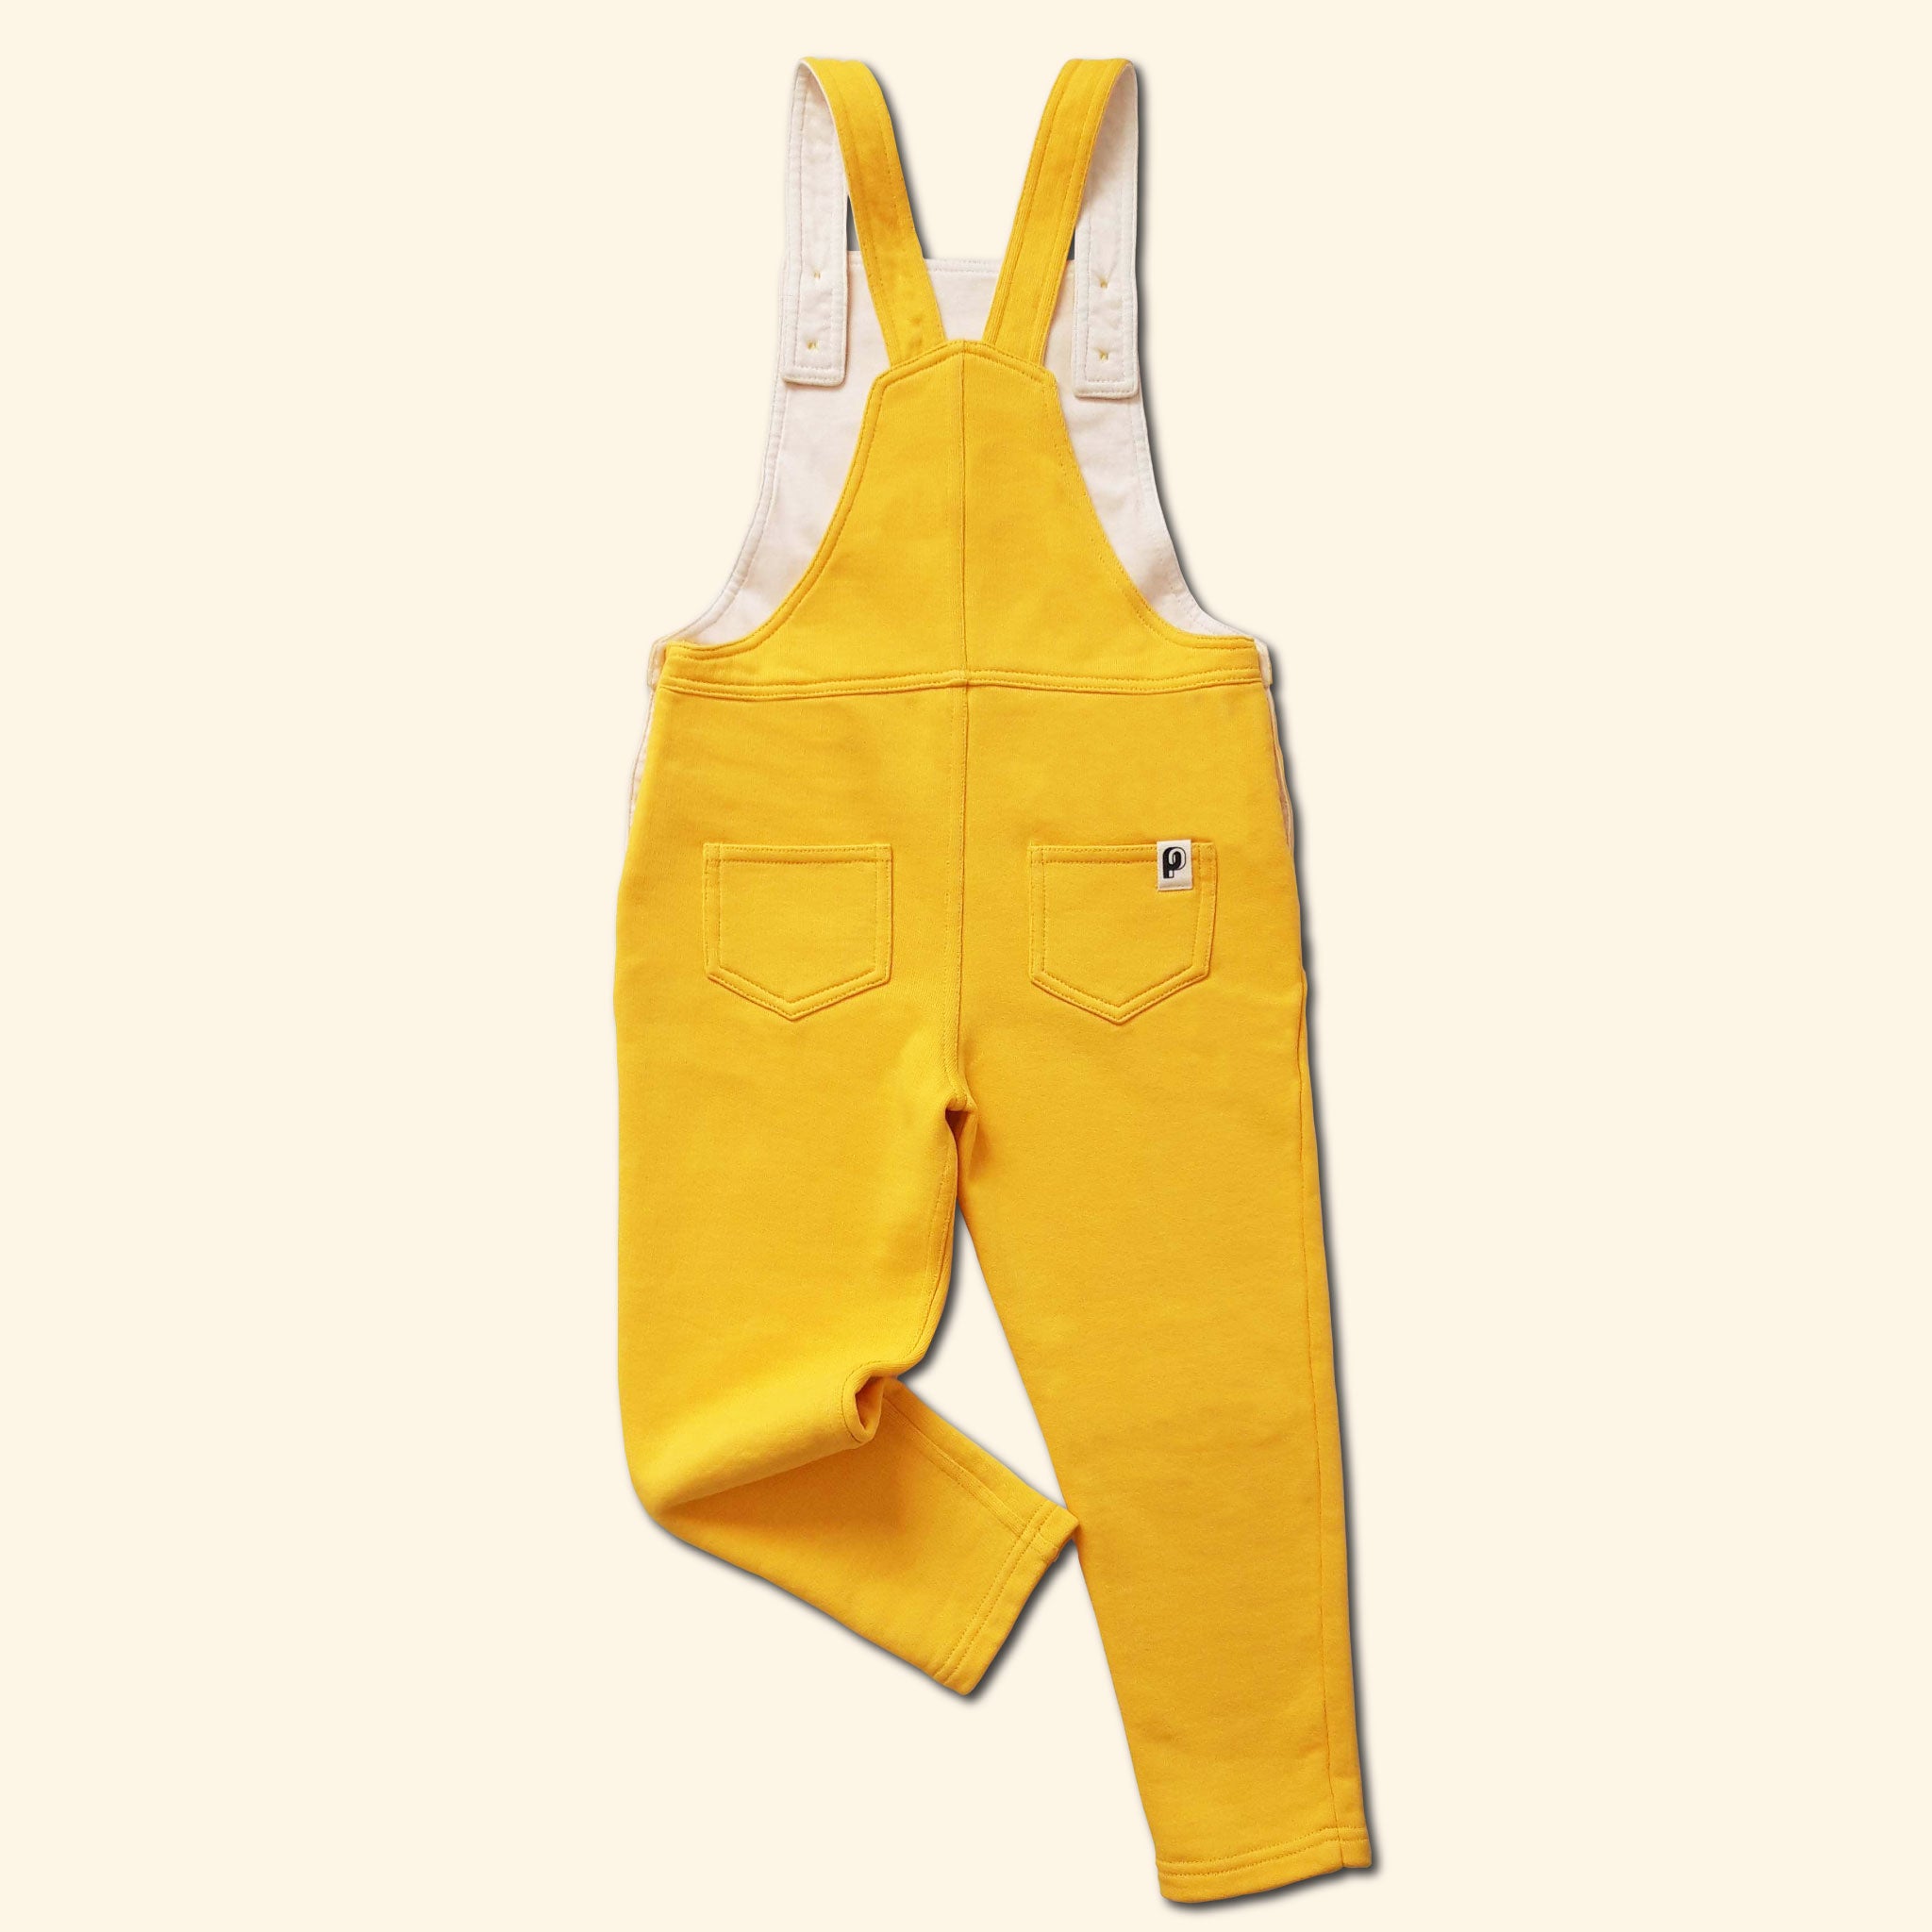 Salopette Shiny Perpète, mixte, en coton bio, coloris jaune, bretelles ajustables avec des boutons, à plat vue de dos